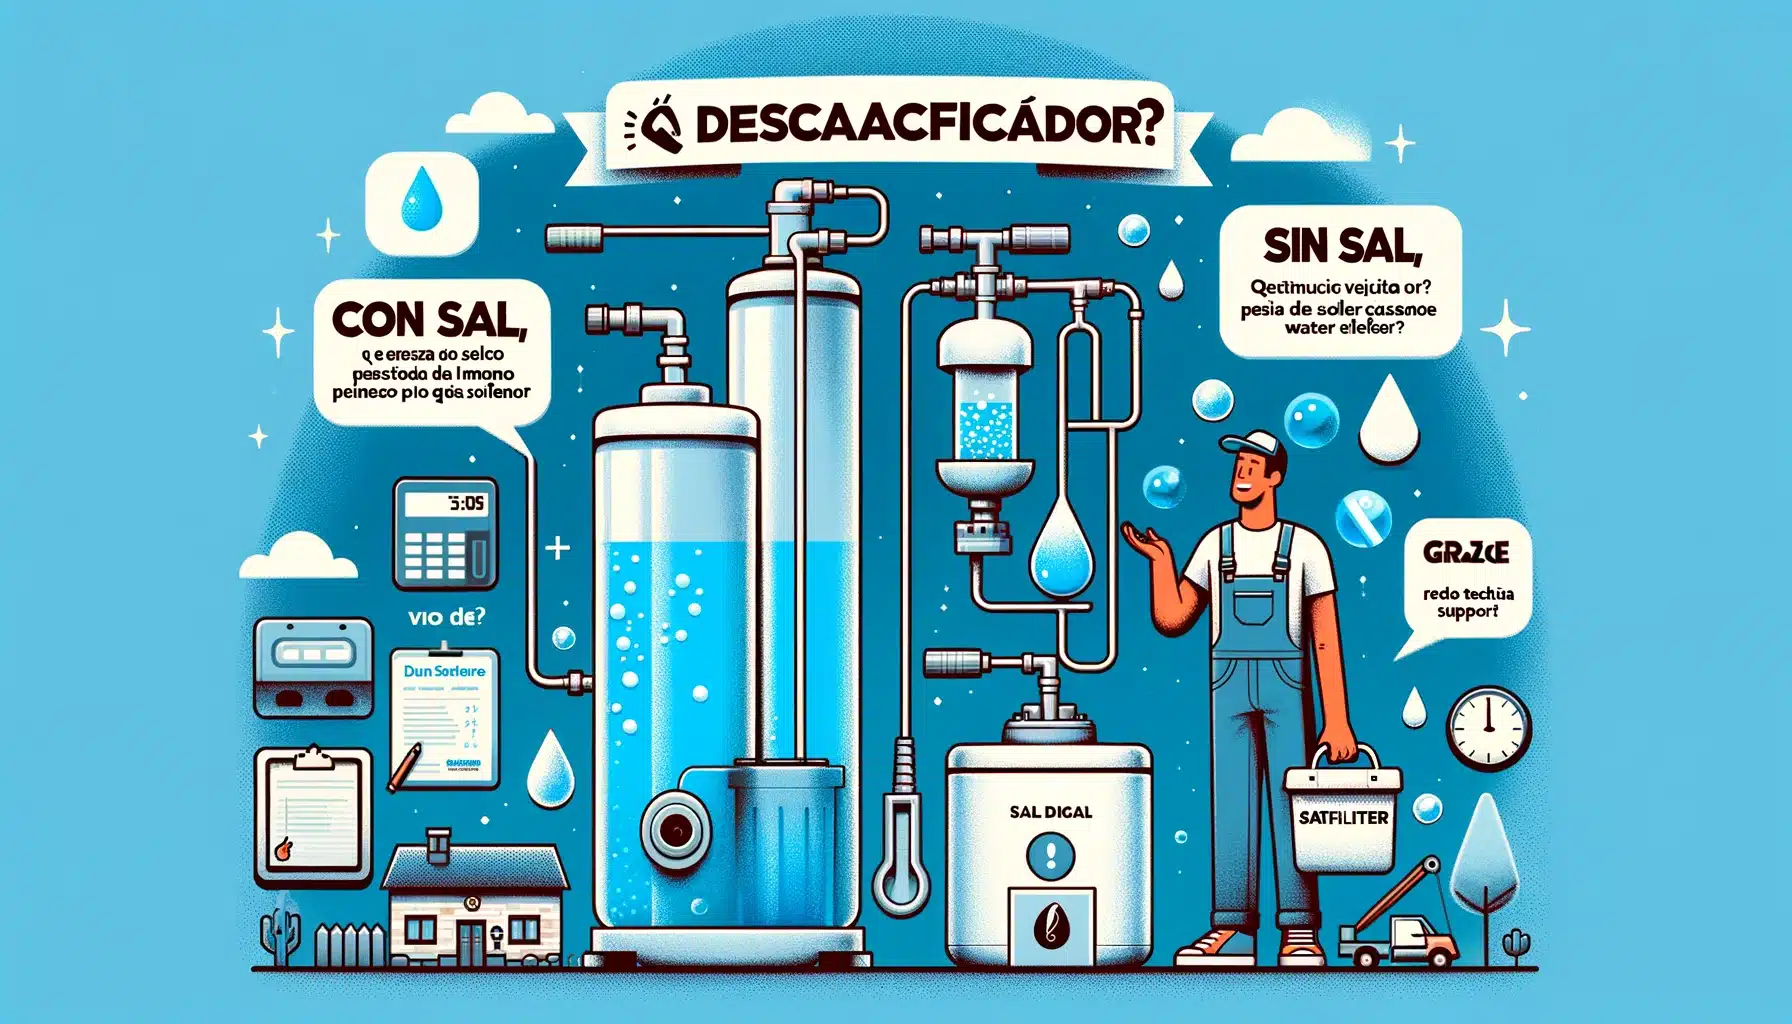 El descalcificador sin sal, ¿la opción más ecológica?